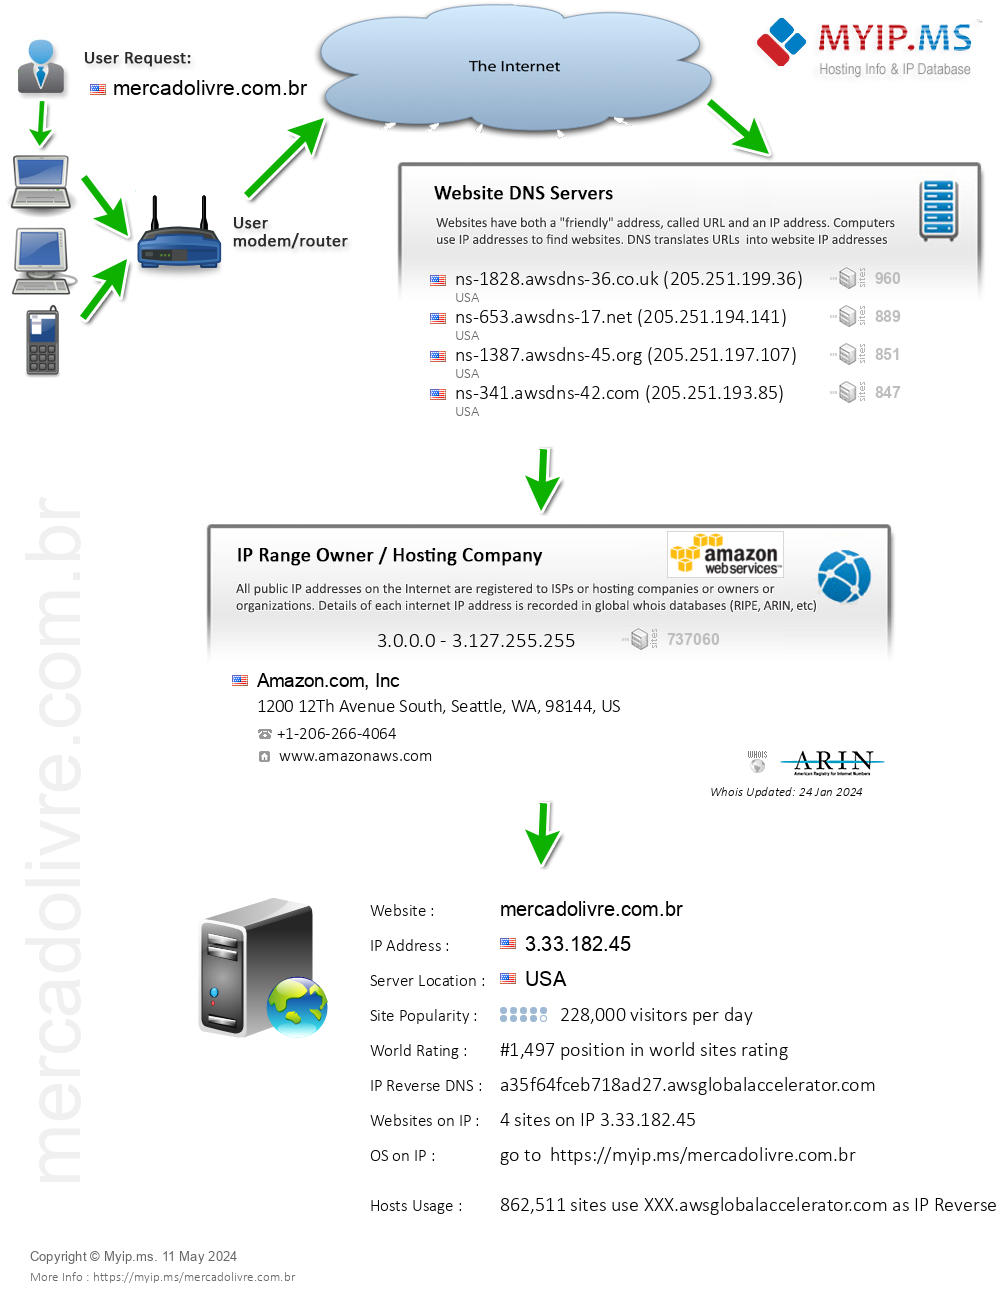 Mercadolivre.com.br - Website Hosting Visual IP Diagram